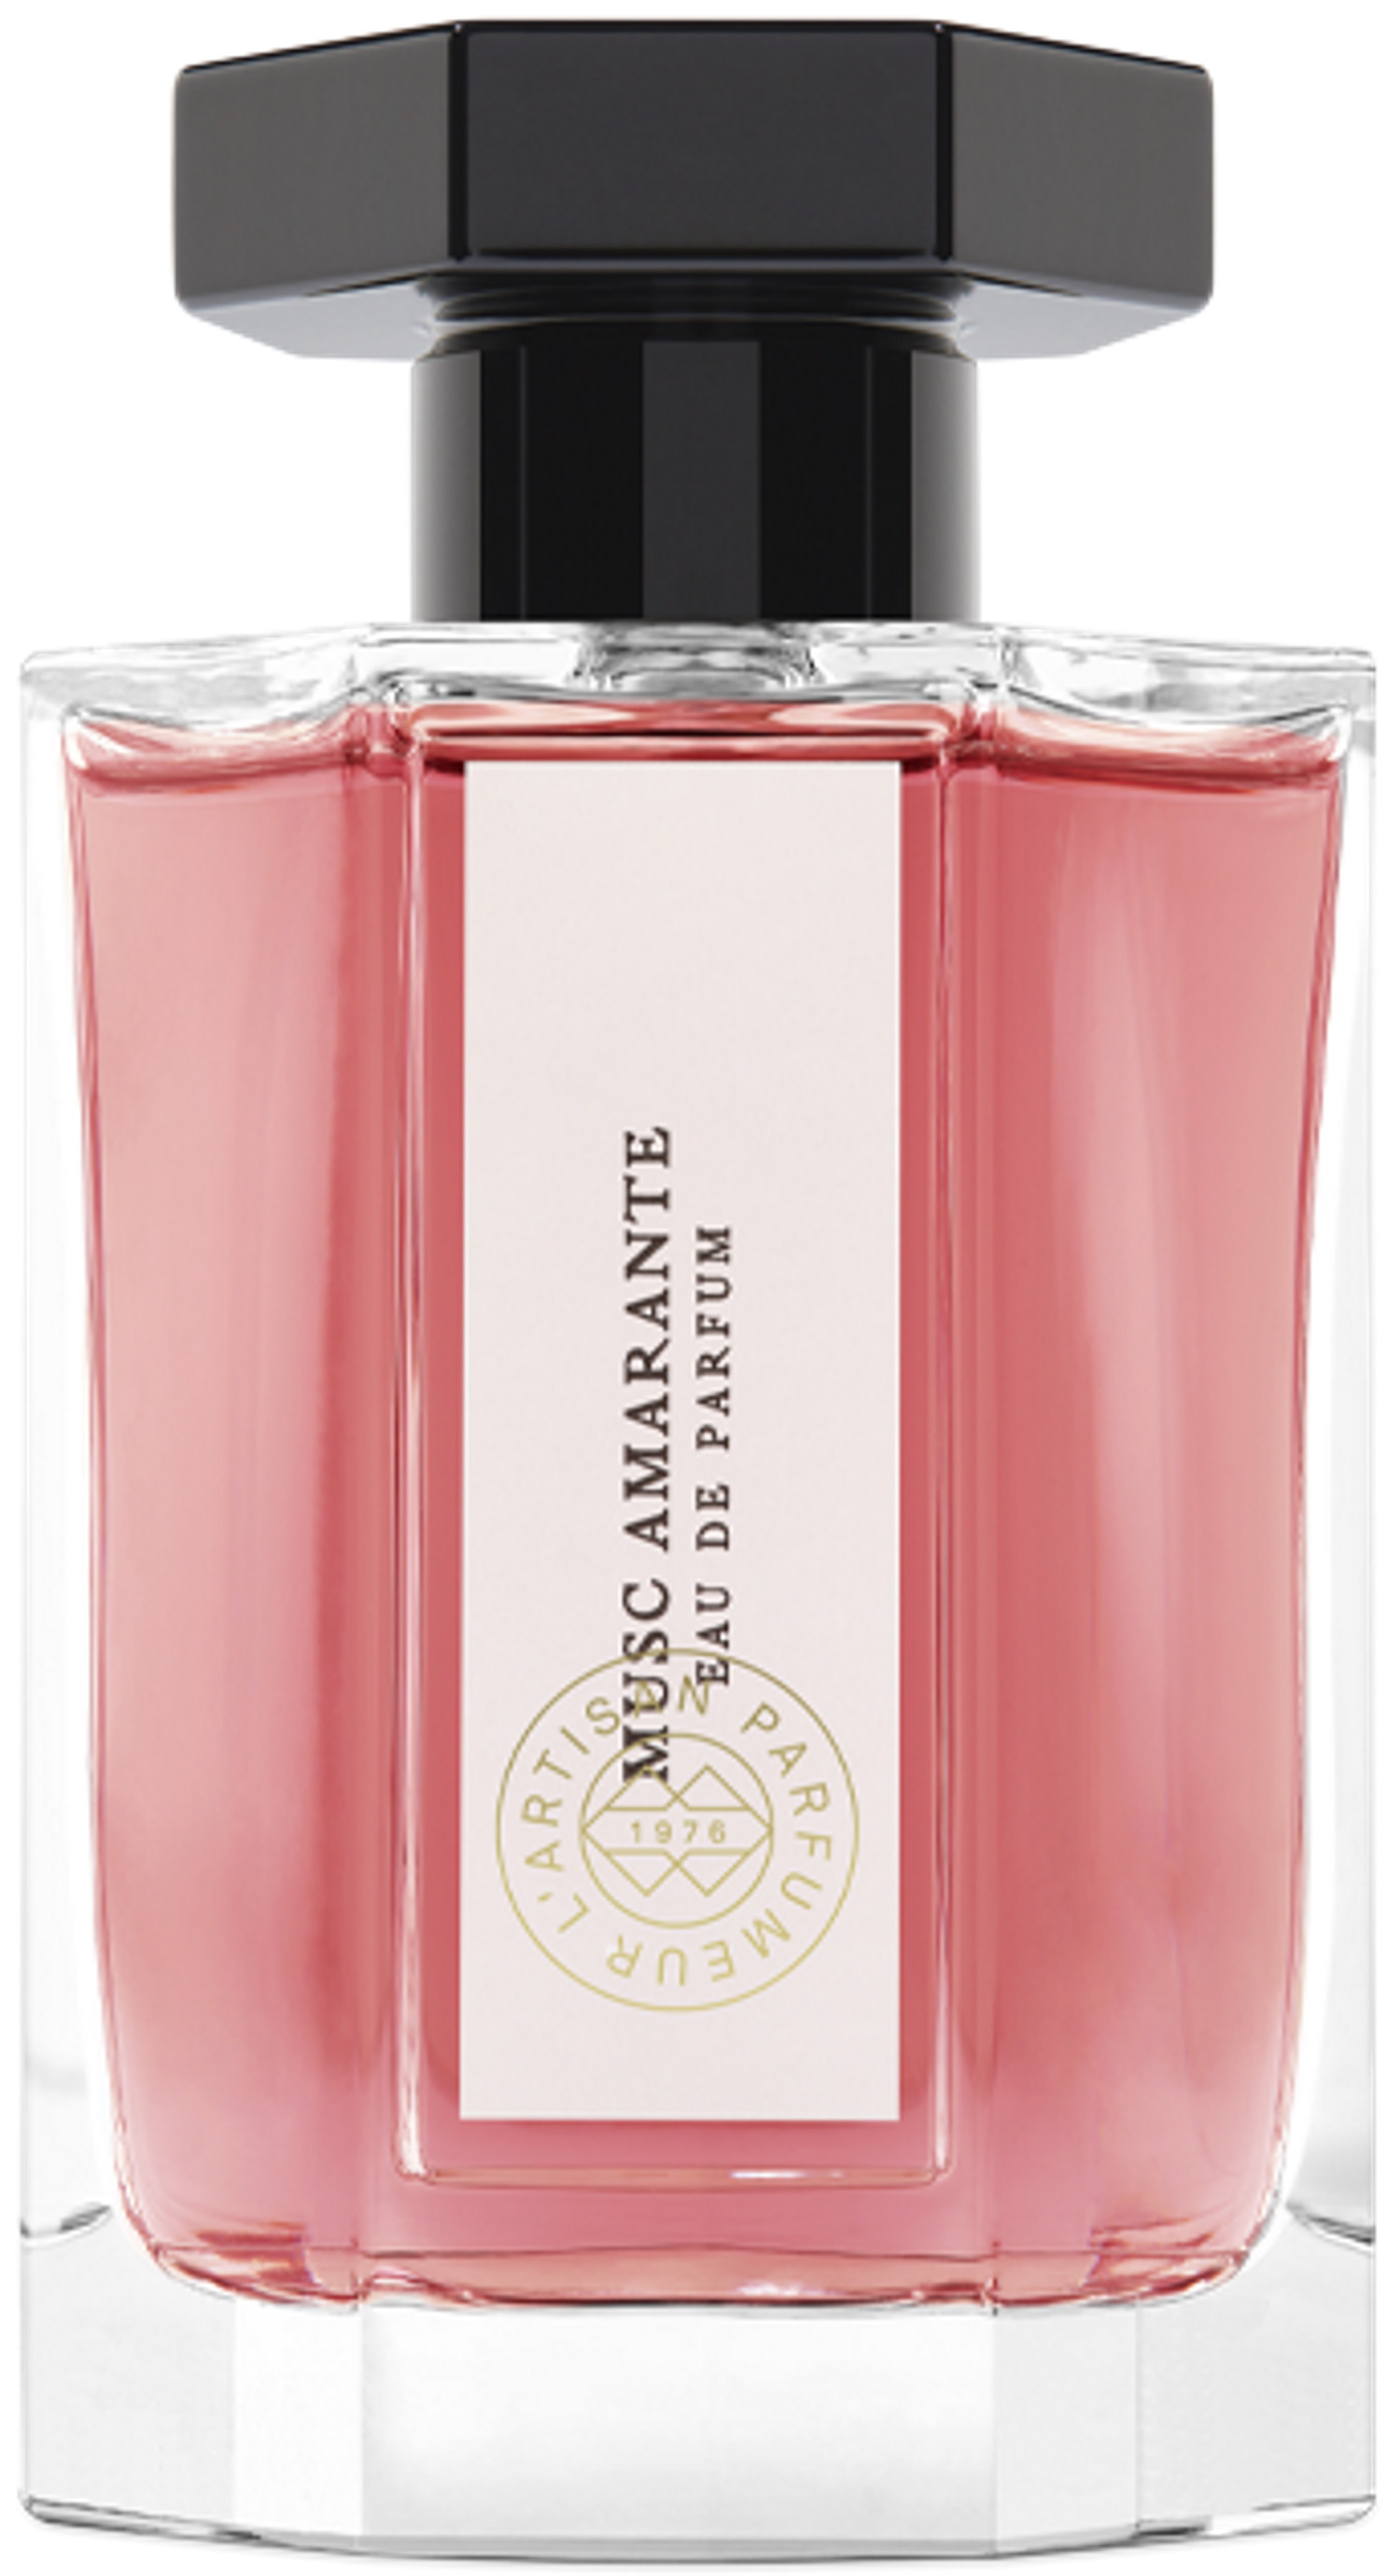 Top 10 des parfums pour l'automne 2022 L'ARTISAN PARFUMEUR - Collection Le Potager : Musc Amarante